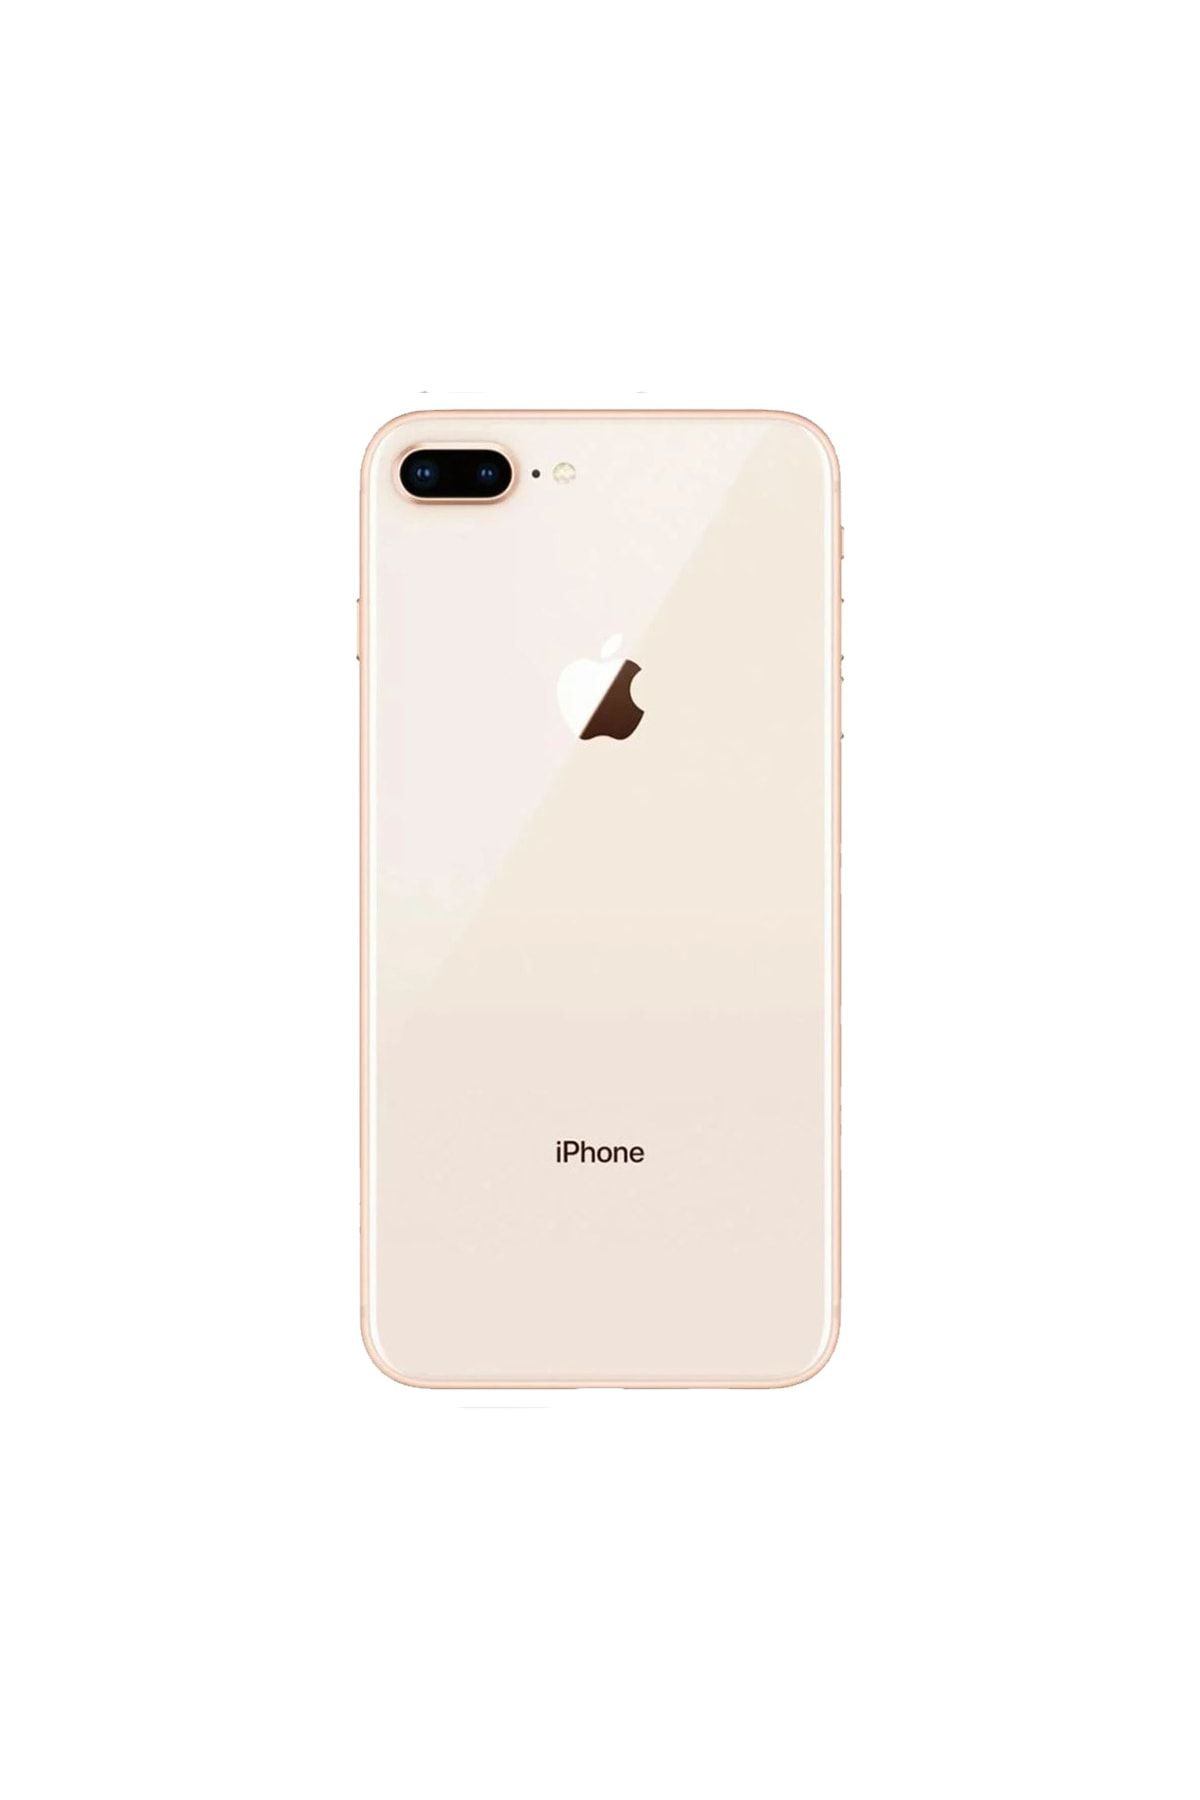 Apple Yenilenmiş iPhone 8 Plus 128 GB Altın Cep Telefonu (12 Ay Garantili) - B Kalite